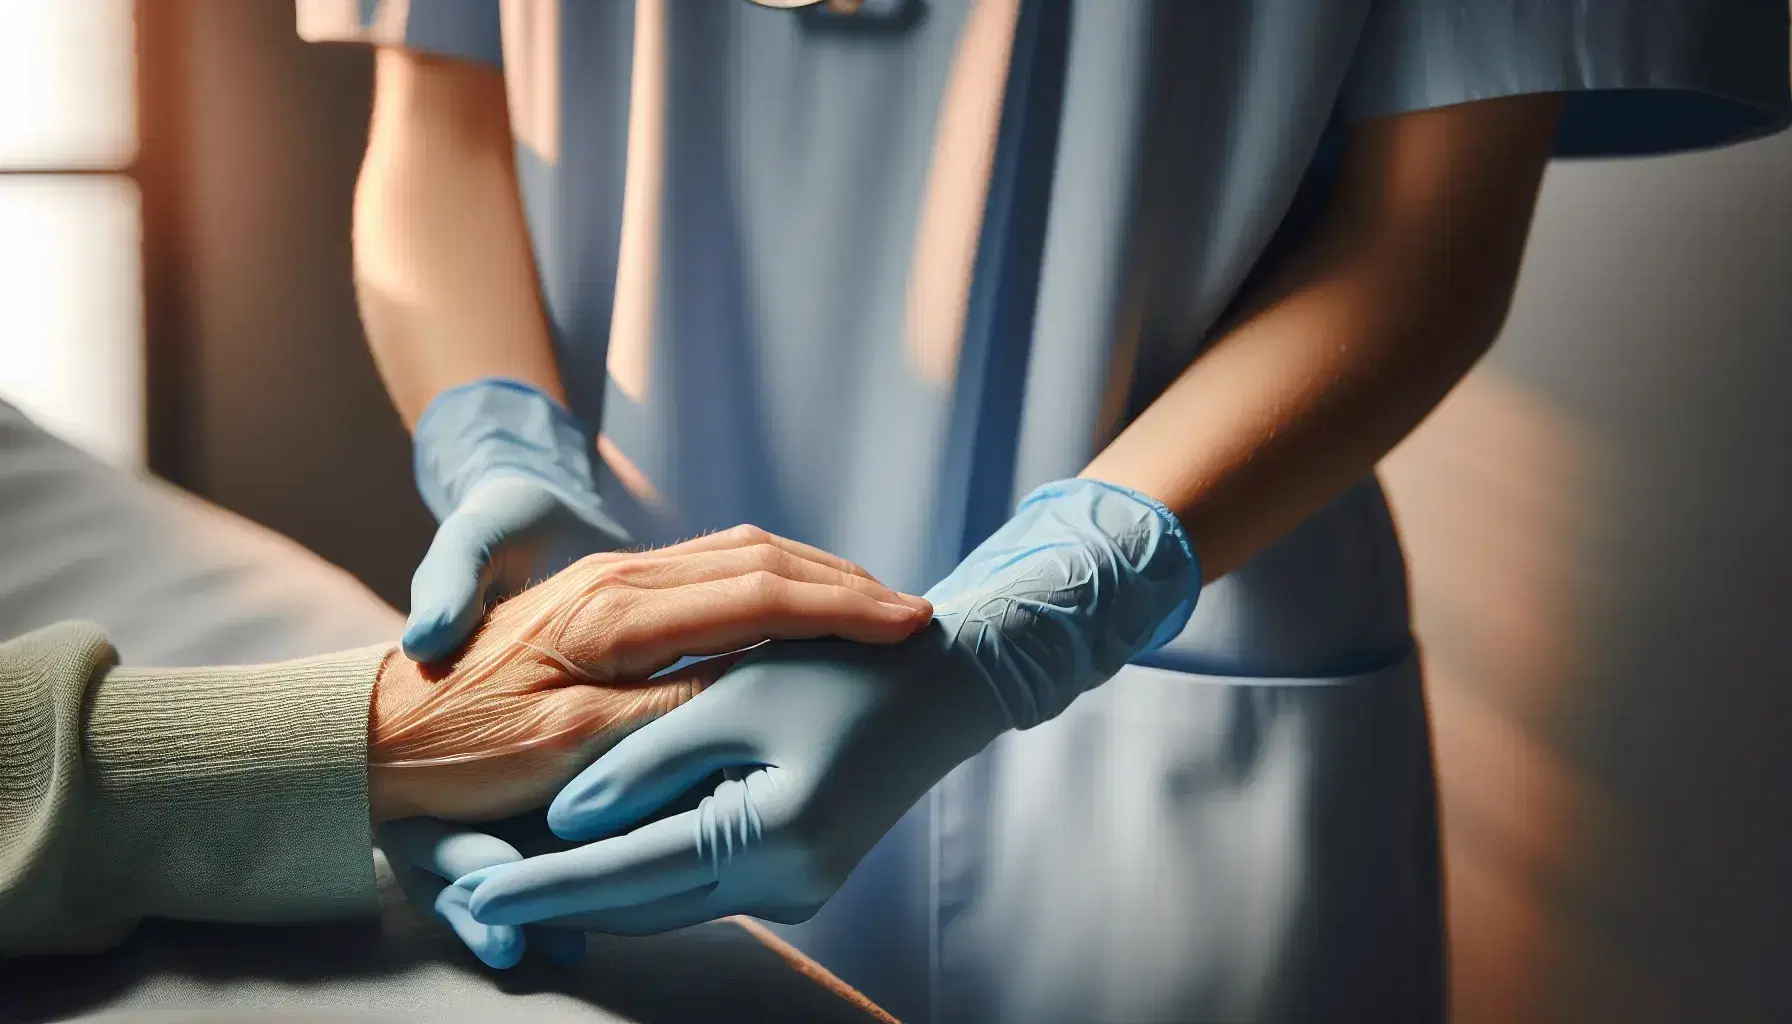 Manos de enfermera con guantes de látex azul claro sosteniendo con cuidado la mano frágil de un paciente, en un entorno tranquilo y difuminado.